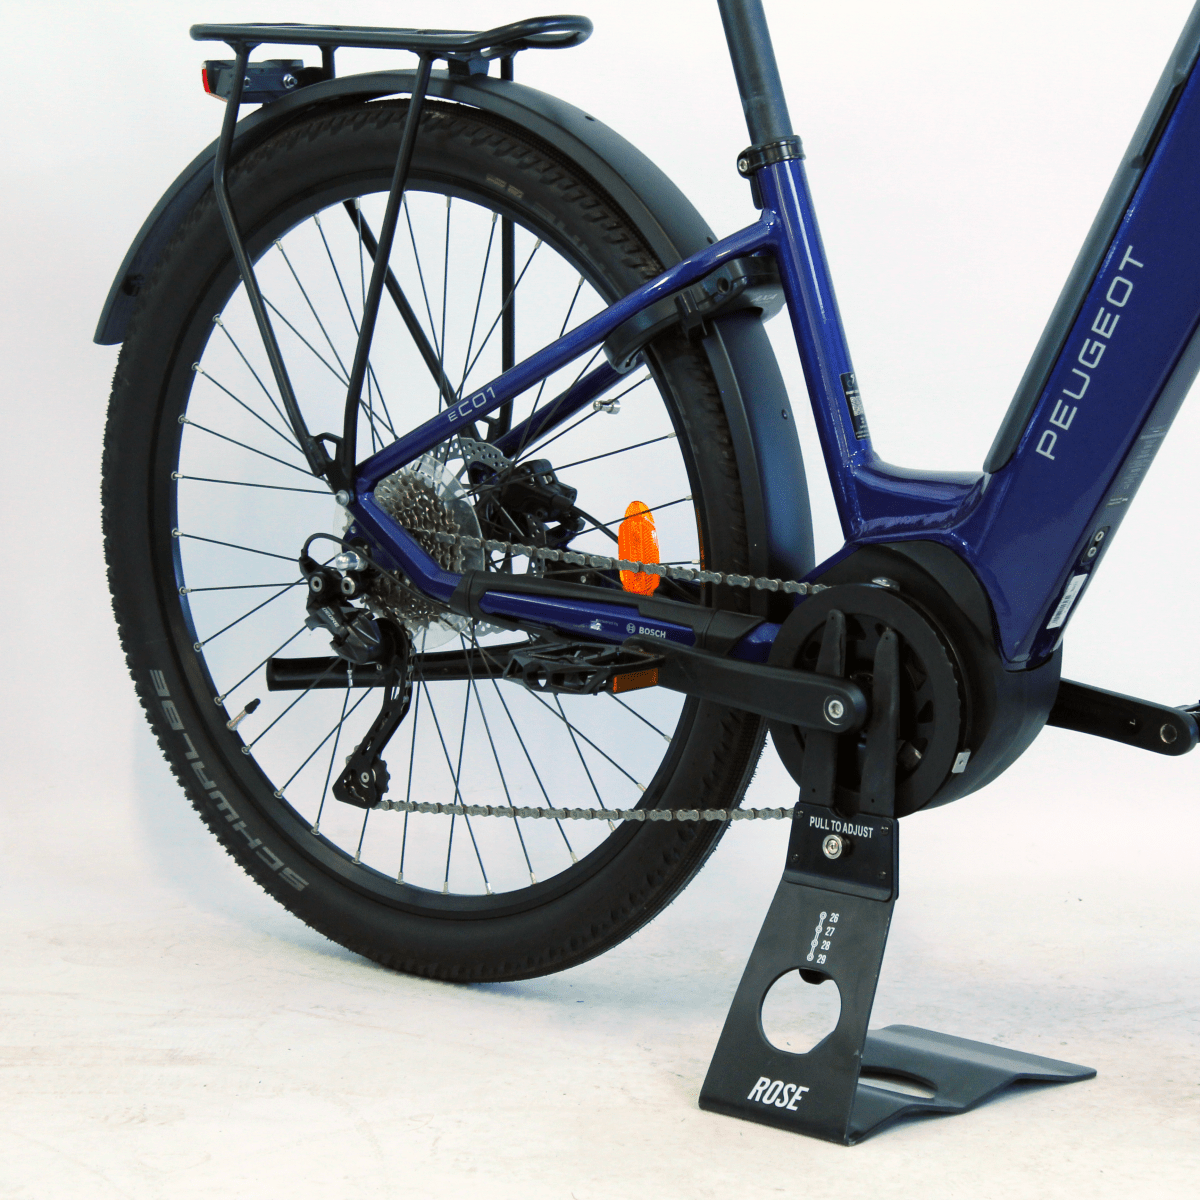 Vélo électrique reconditionné Eco 01 10 bleu | LOEWI